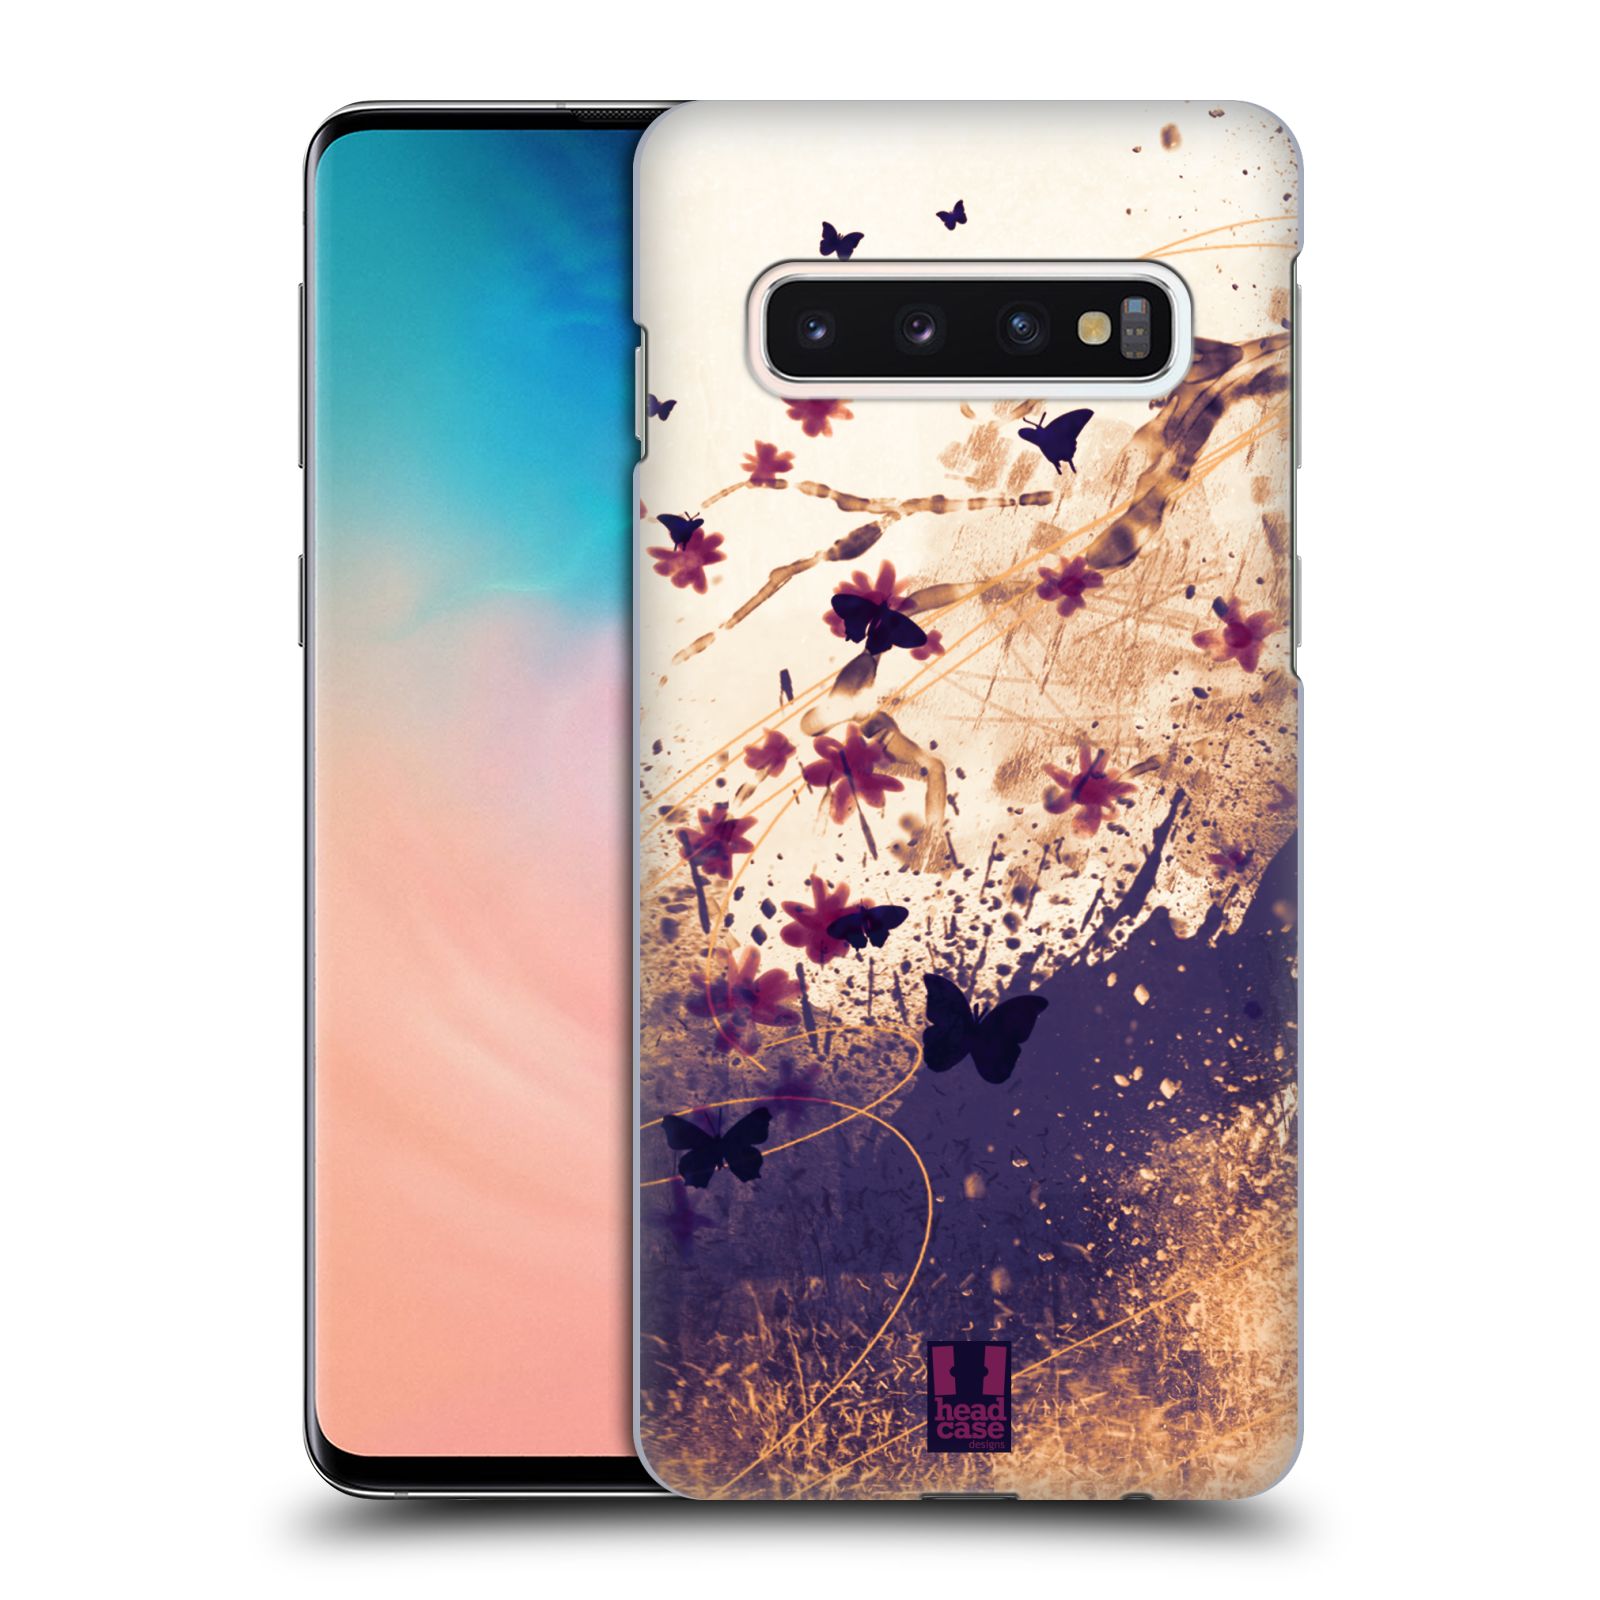 Zadní obal pro mobil Samsung Galaxy S10 - HEAD CASE - Barevné květy a motýlci